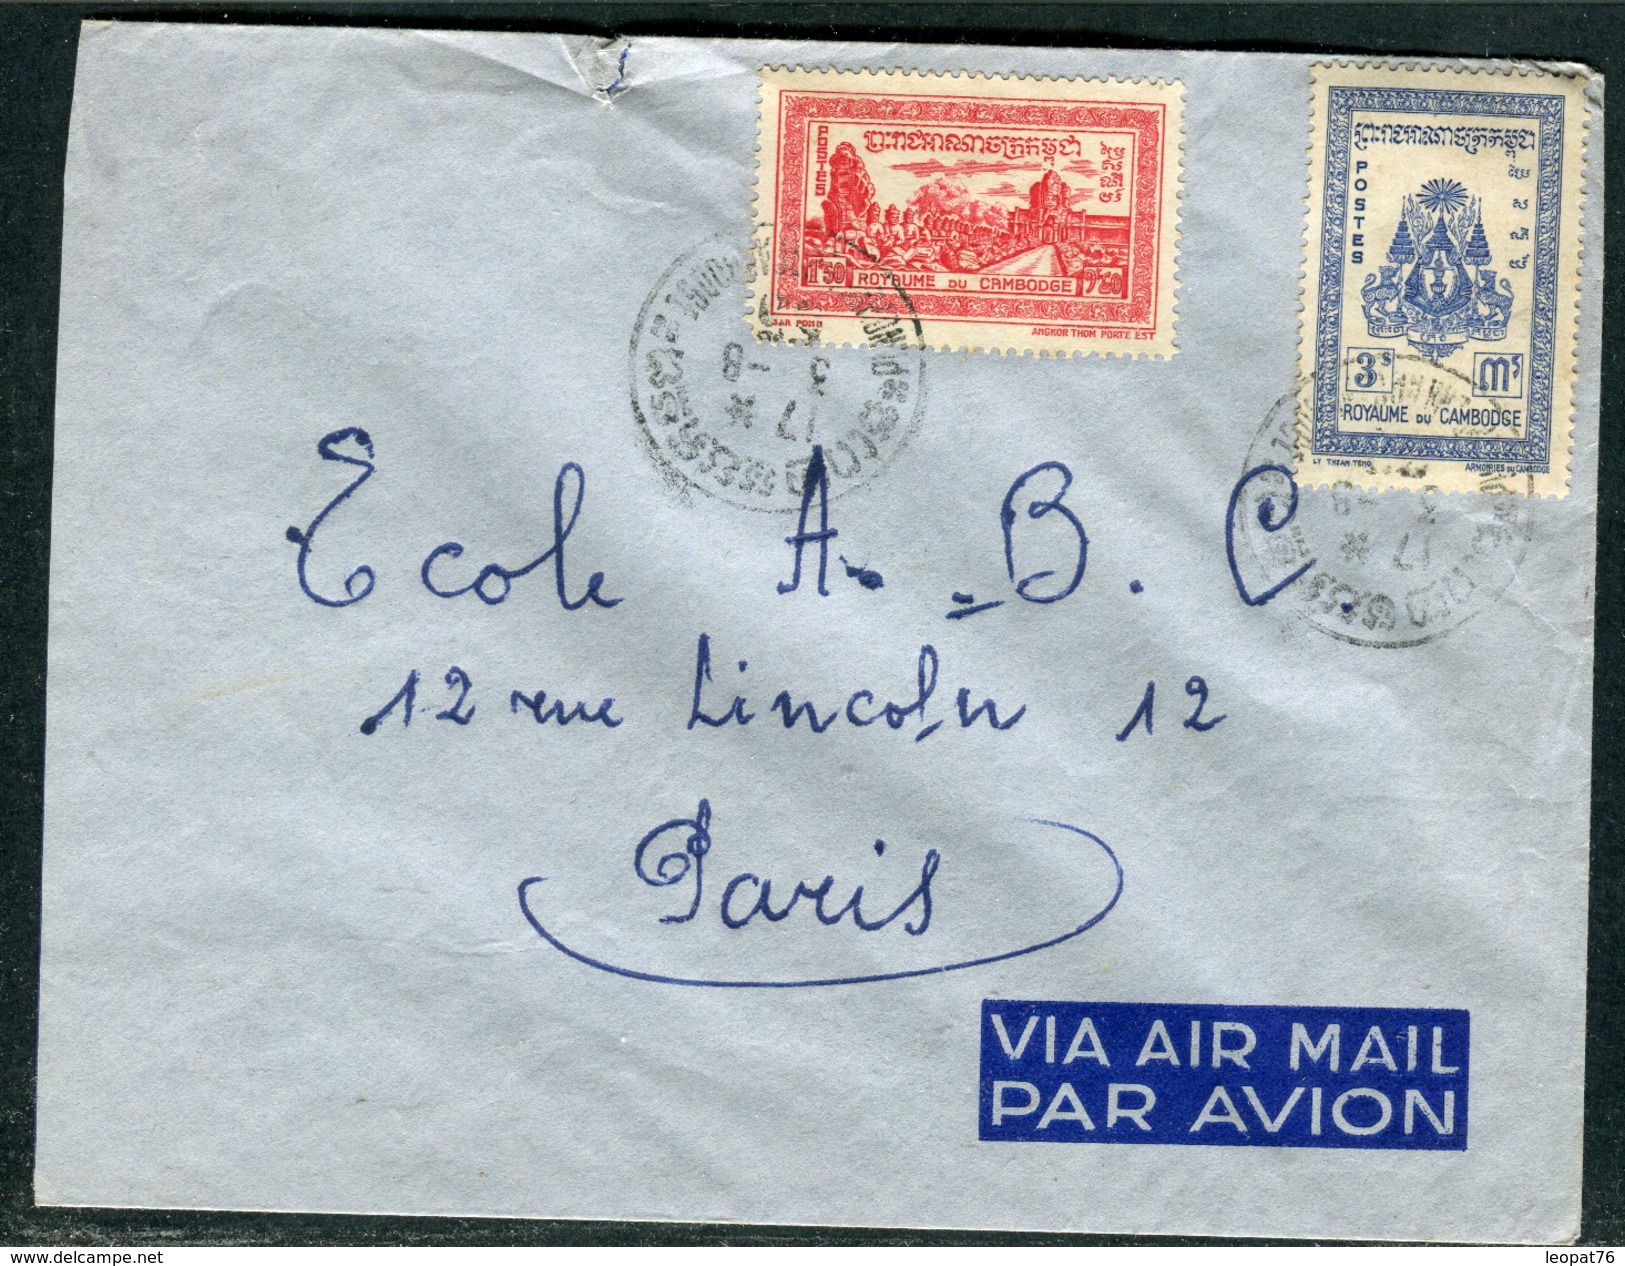 Cambodge - Cover / Enveloppe Pour Paris Par Avion En 1955 - Réf J 132 - Kambodscha